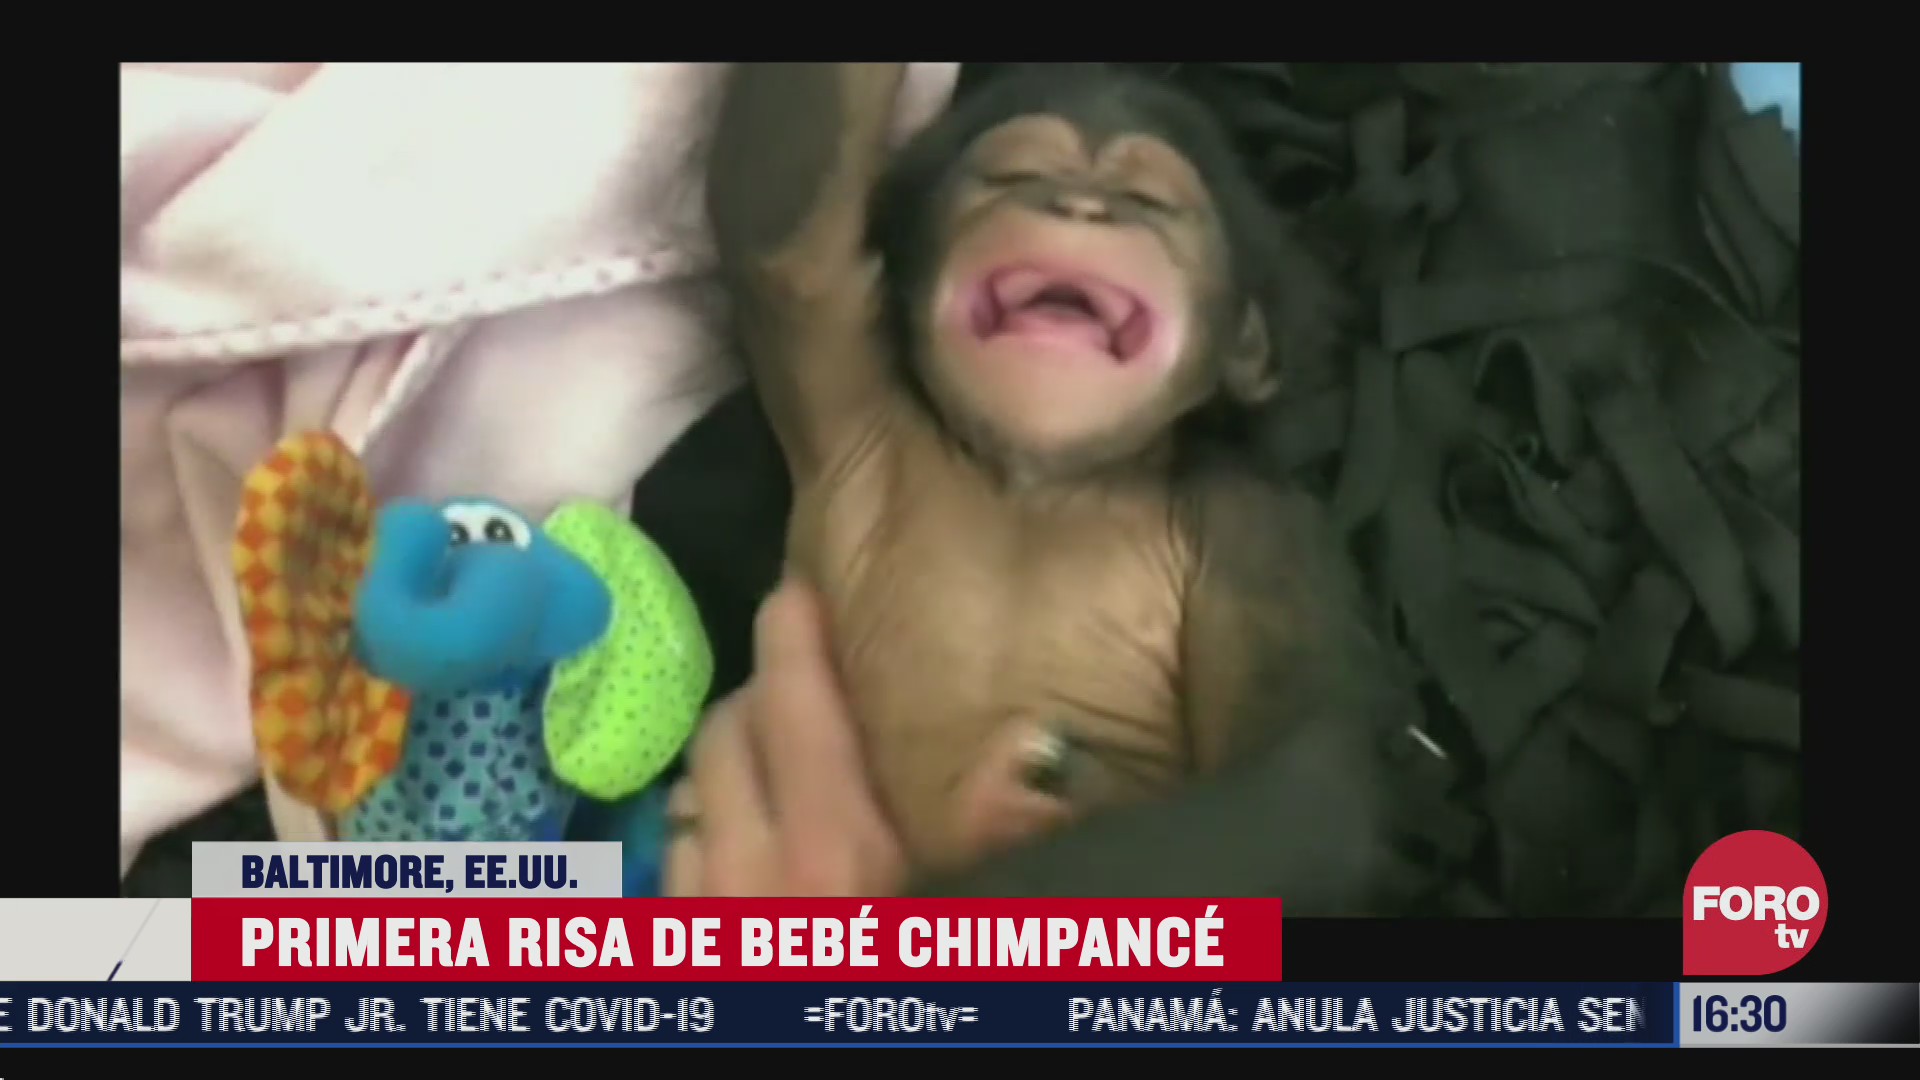 zoologico comparte la primera risa de chimpance bebe